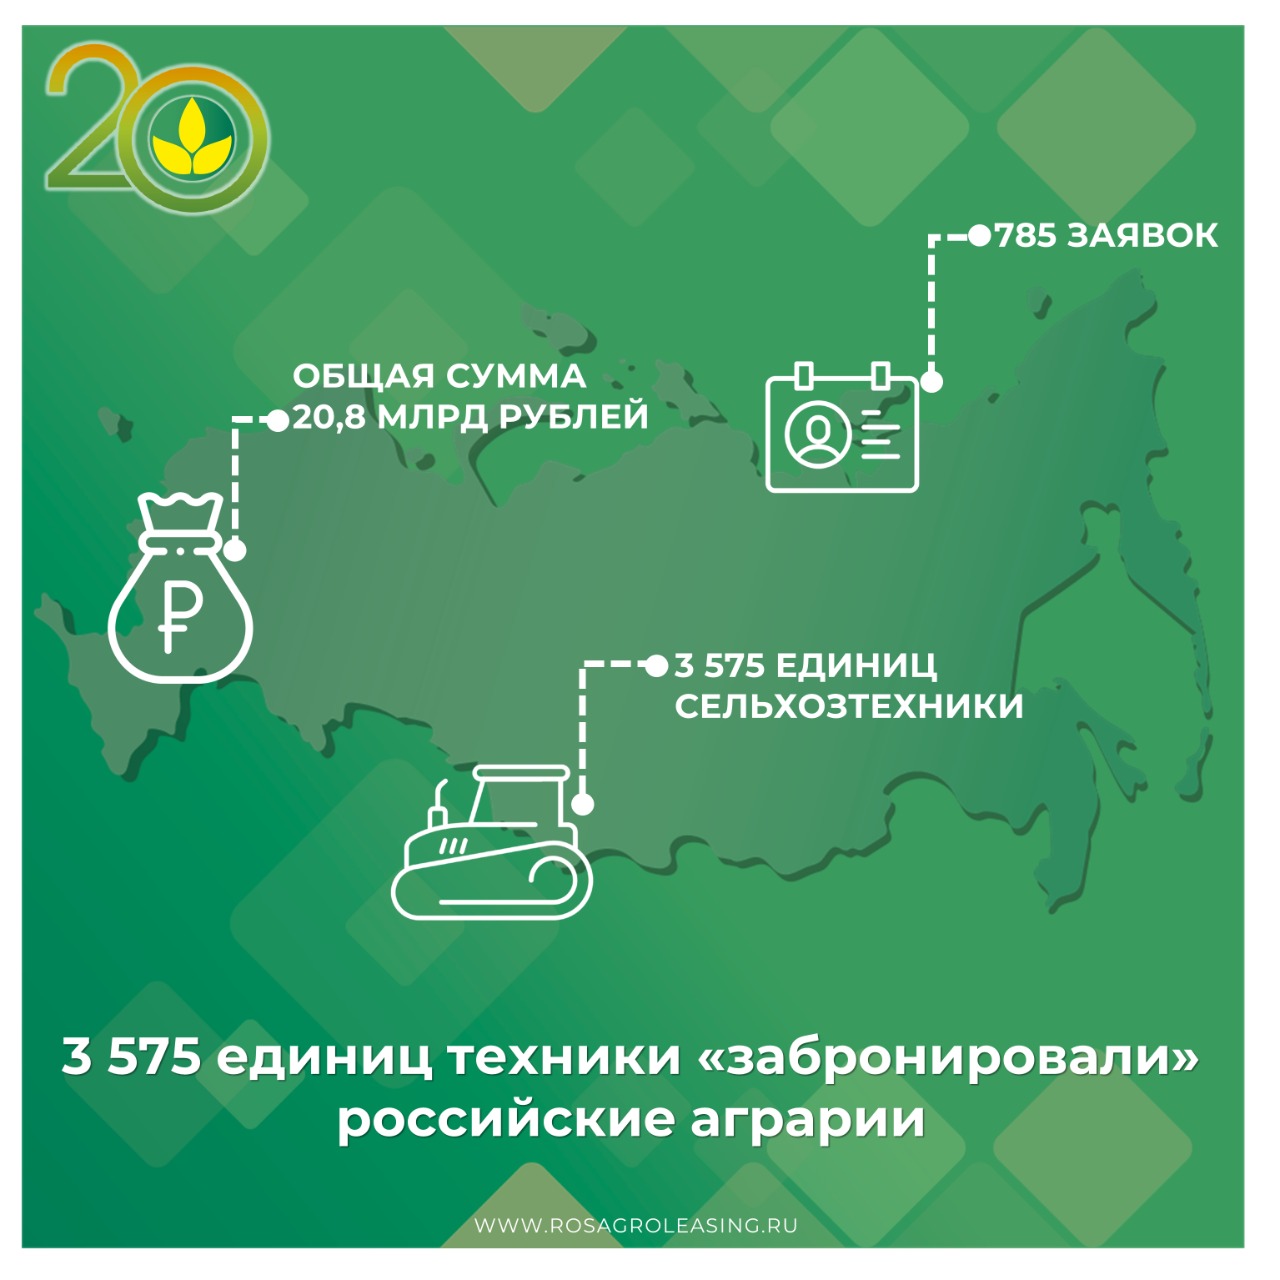 3 575 единиц техники «забронировали» российские аграрии